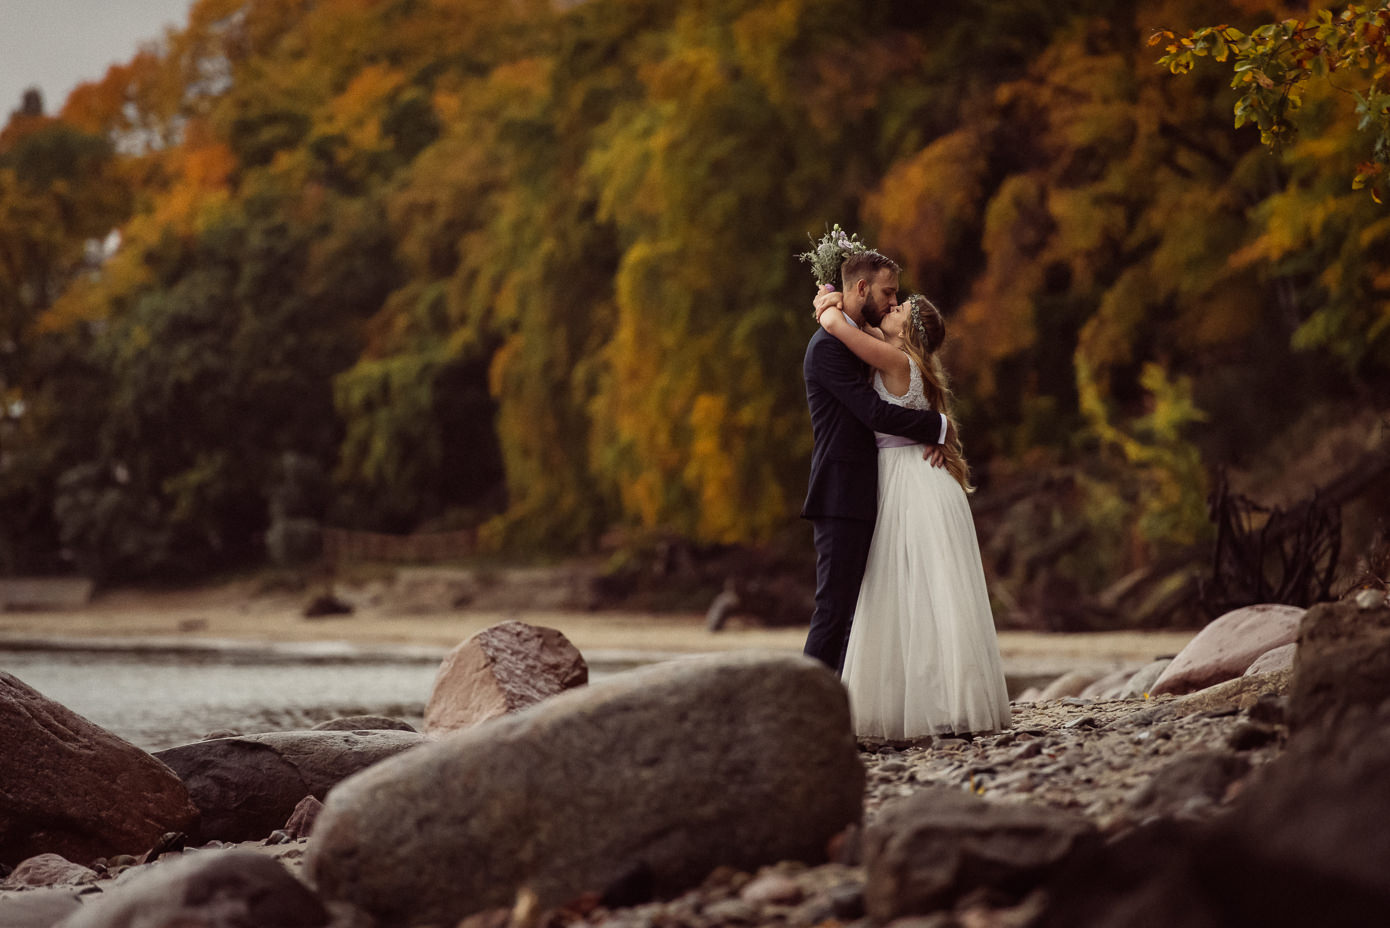 Fotograf Ślubny Gdynia wymarzone zdjęcia ślubne pełne emocji